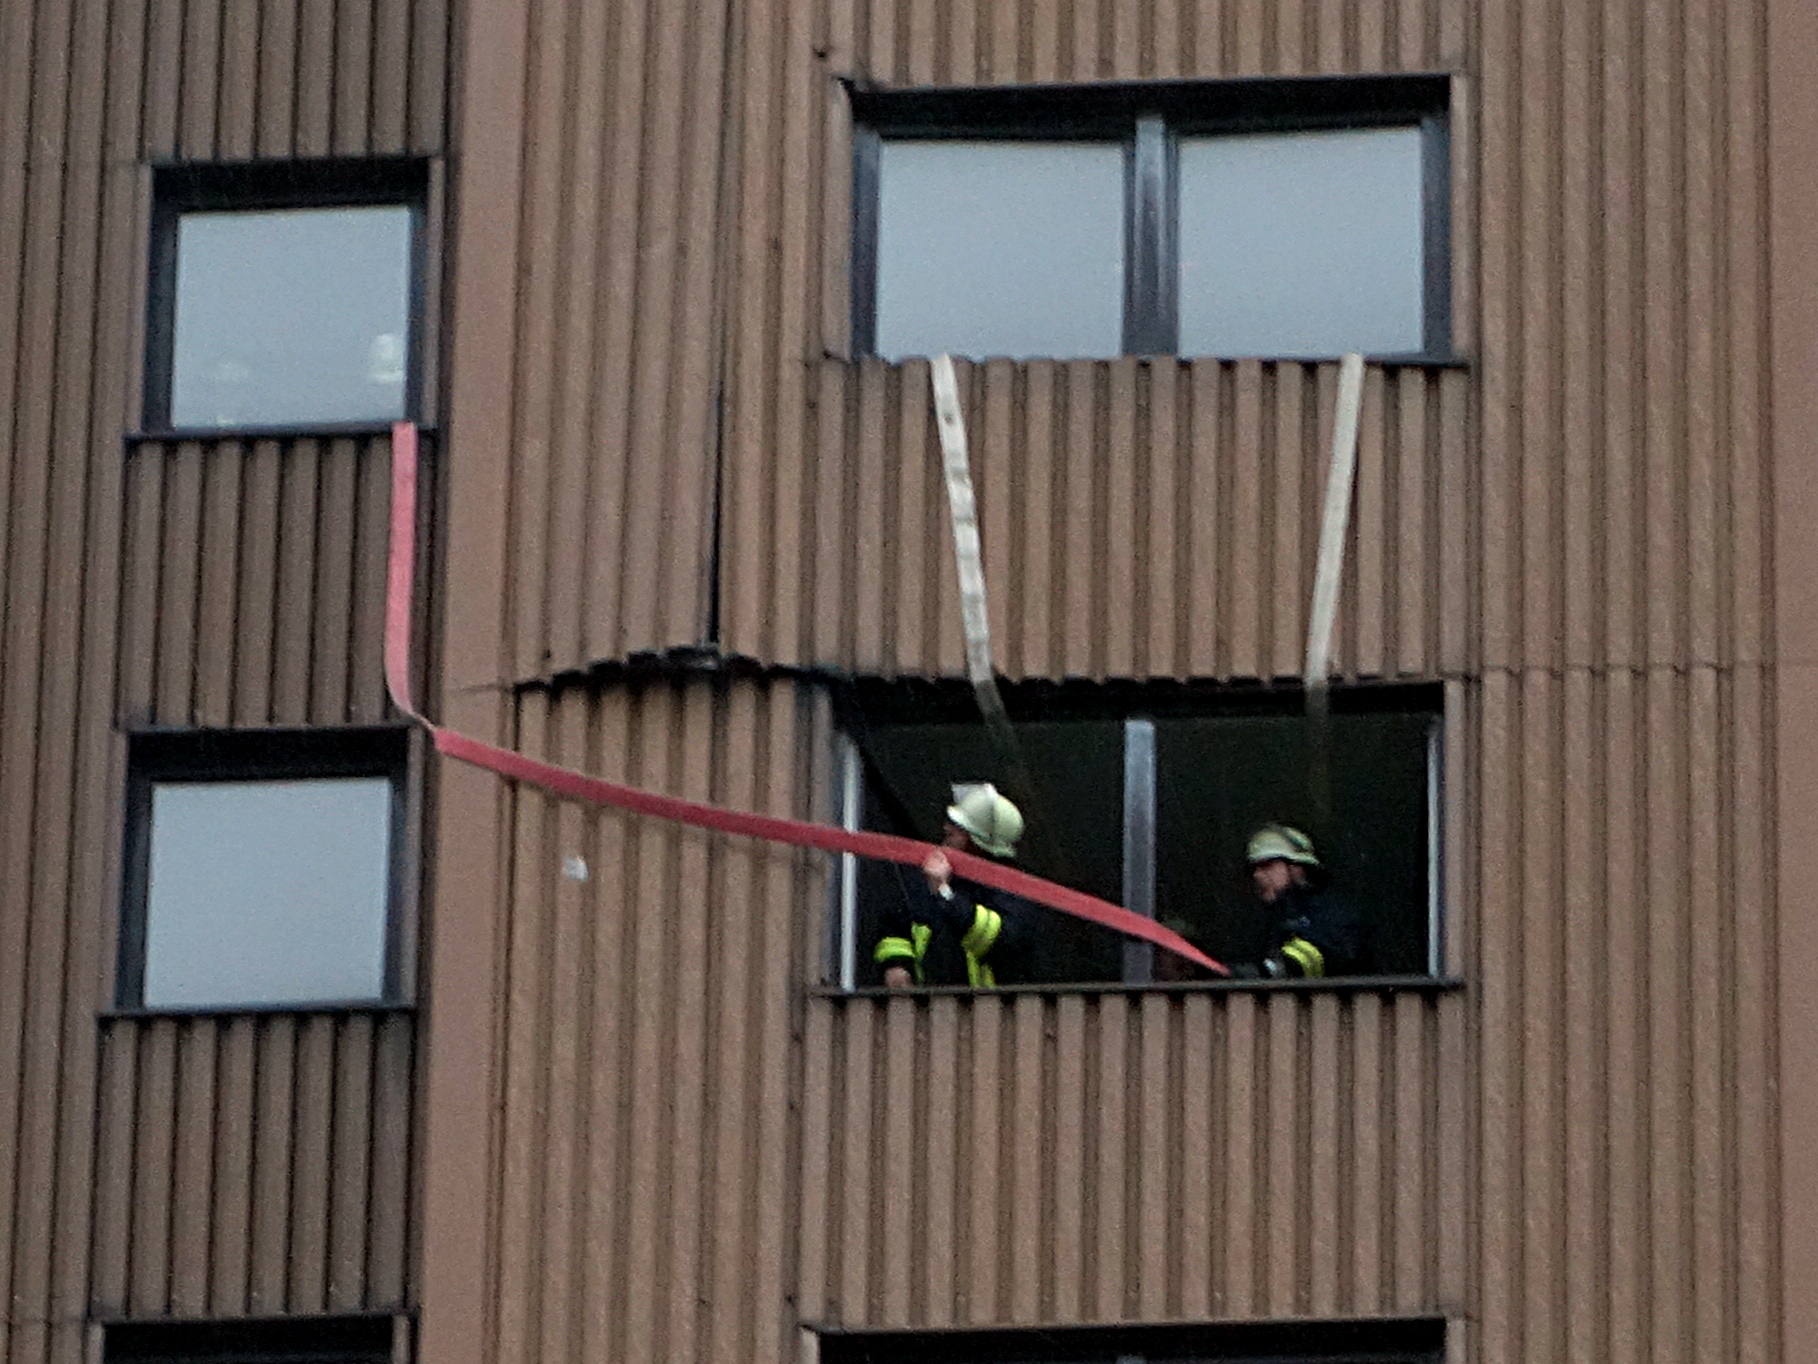 Mit mehreren Feuerwehrschläuchen sicherten Einsatzkräfte der Löschgruppe Weddinghofen mehrere Platten der Metallaußenverkleidung des Wohnturms, die wegen des Sturm von der 9. Etage in die Tiefe zu stürzen drohten.